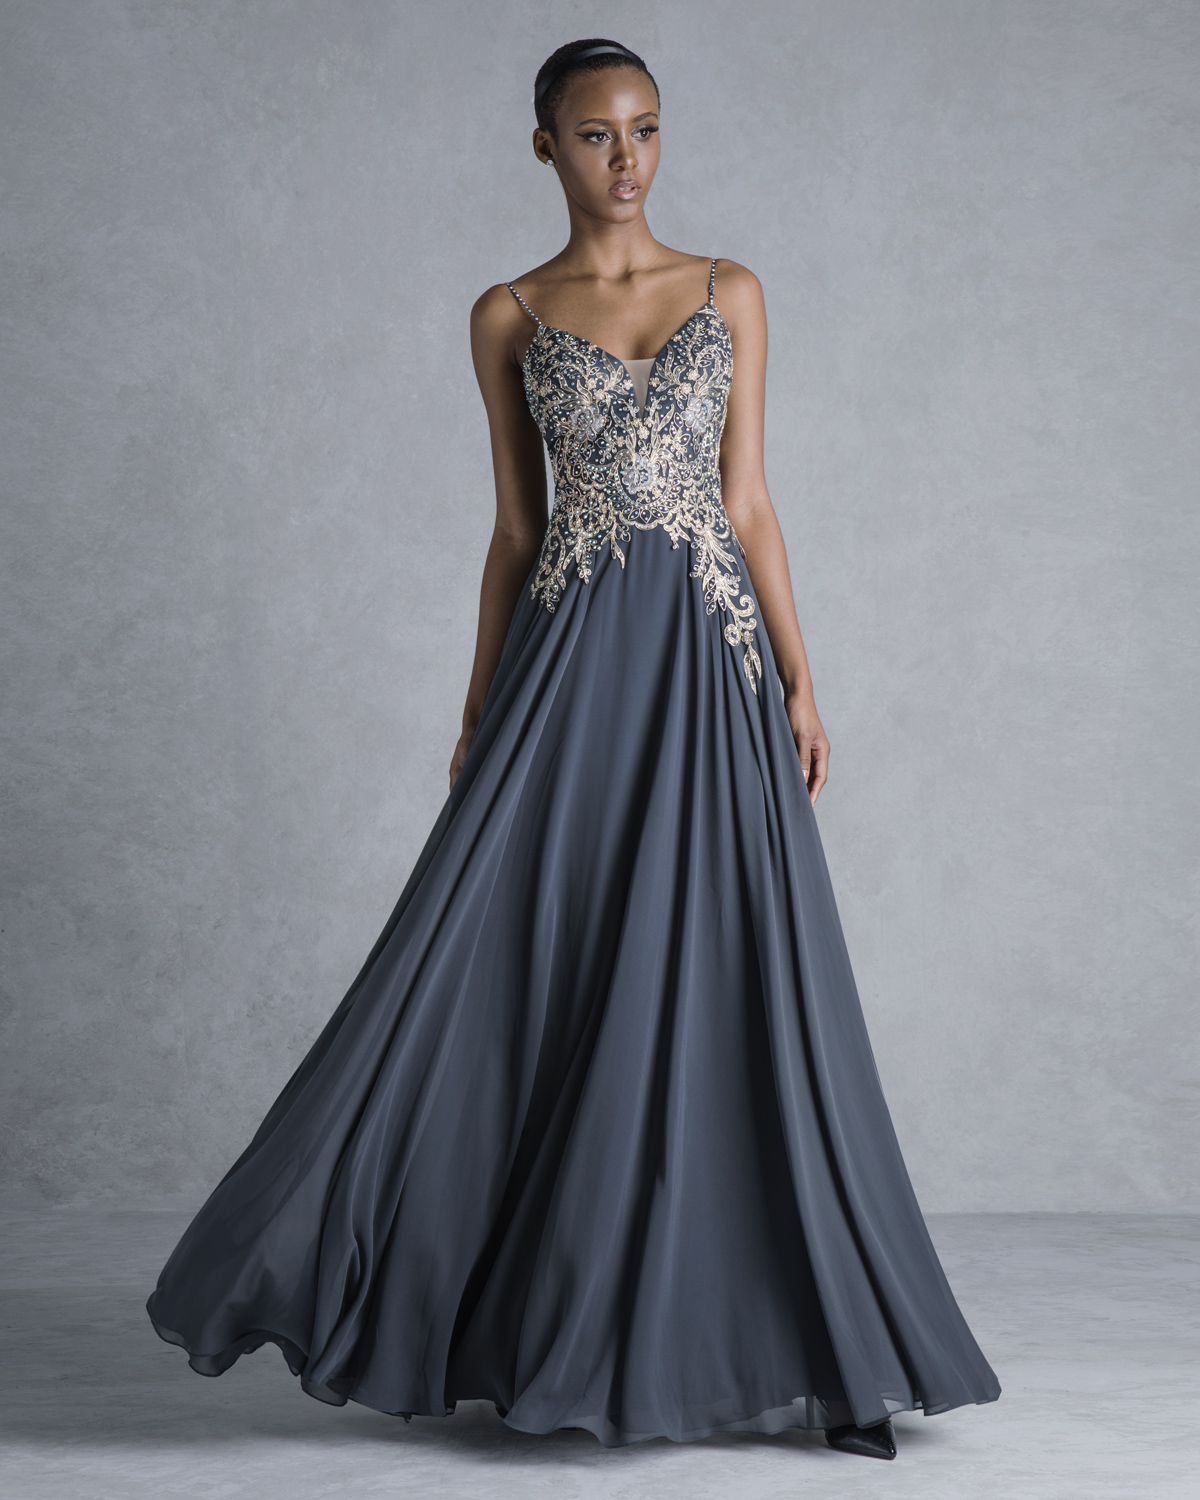 Evening Dresses / Long evening dress with lace appliqués